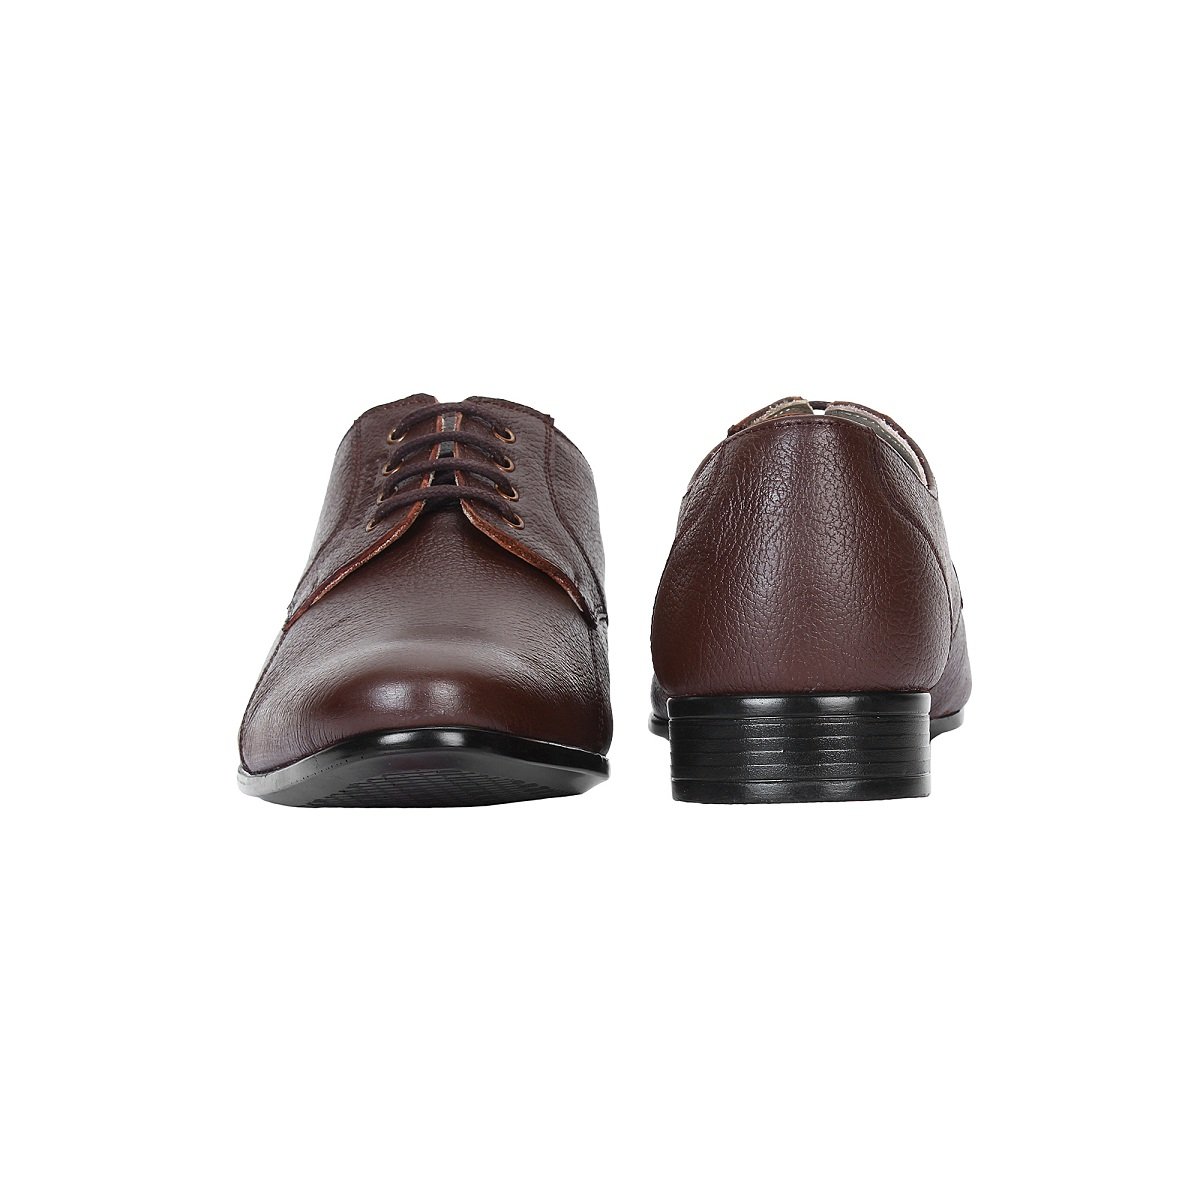 SeeandWear Stylish Shoes for Men -Minor Defect - SeeandWear